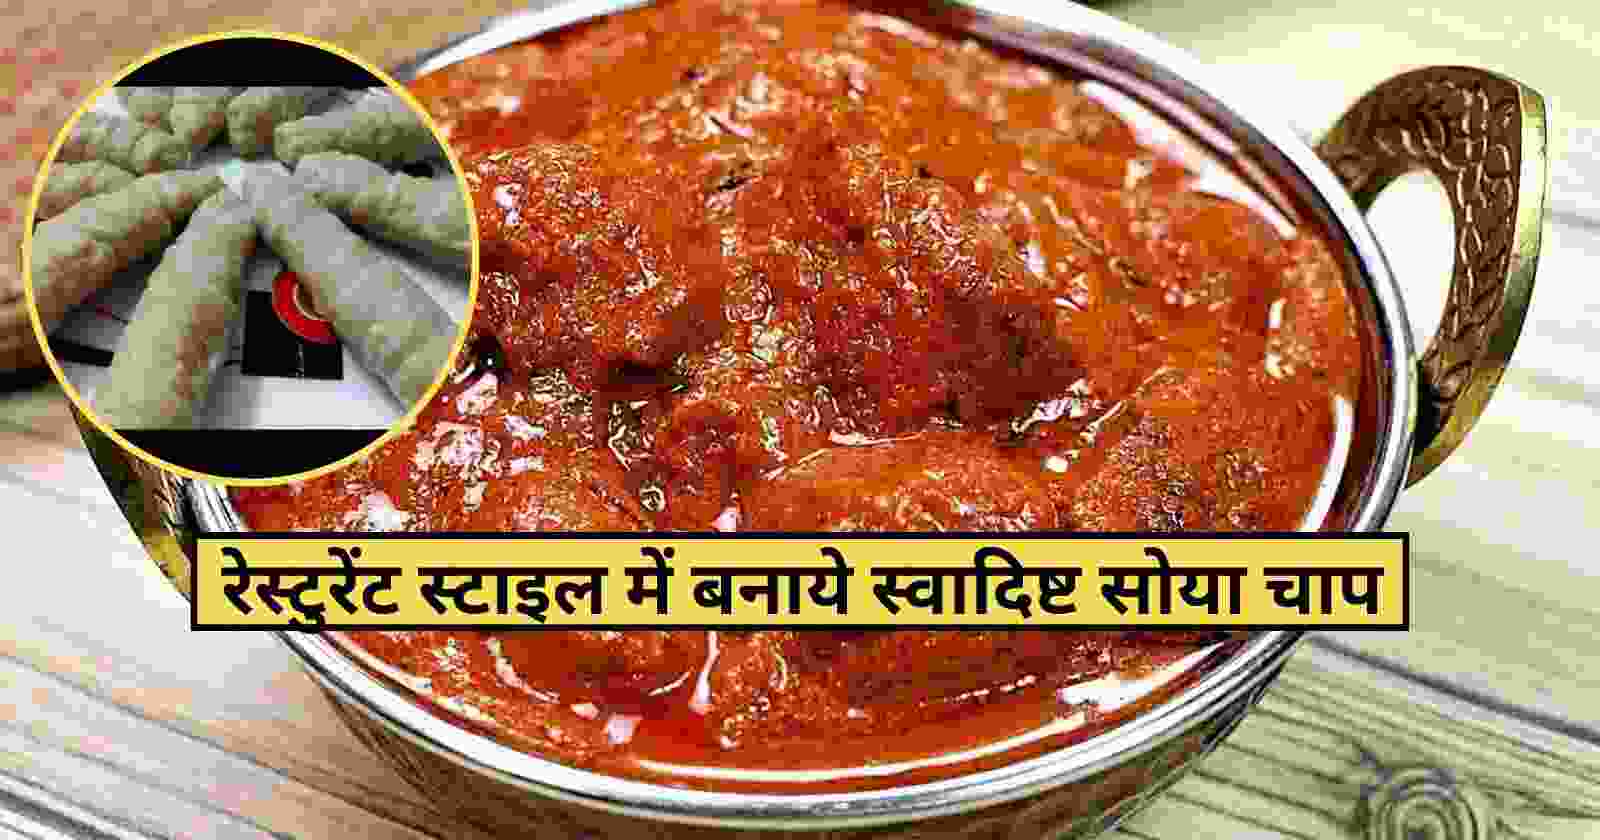 Soya Chaap Recipe In Hindi: चटपटे सोया चाप के साथ बनाये अपनी पार्टी को यादगार hinditonews.in